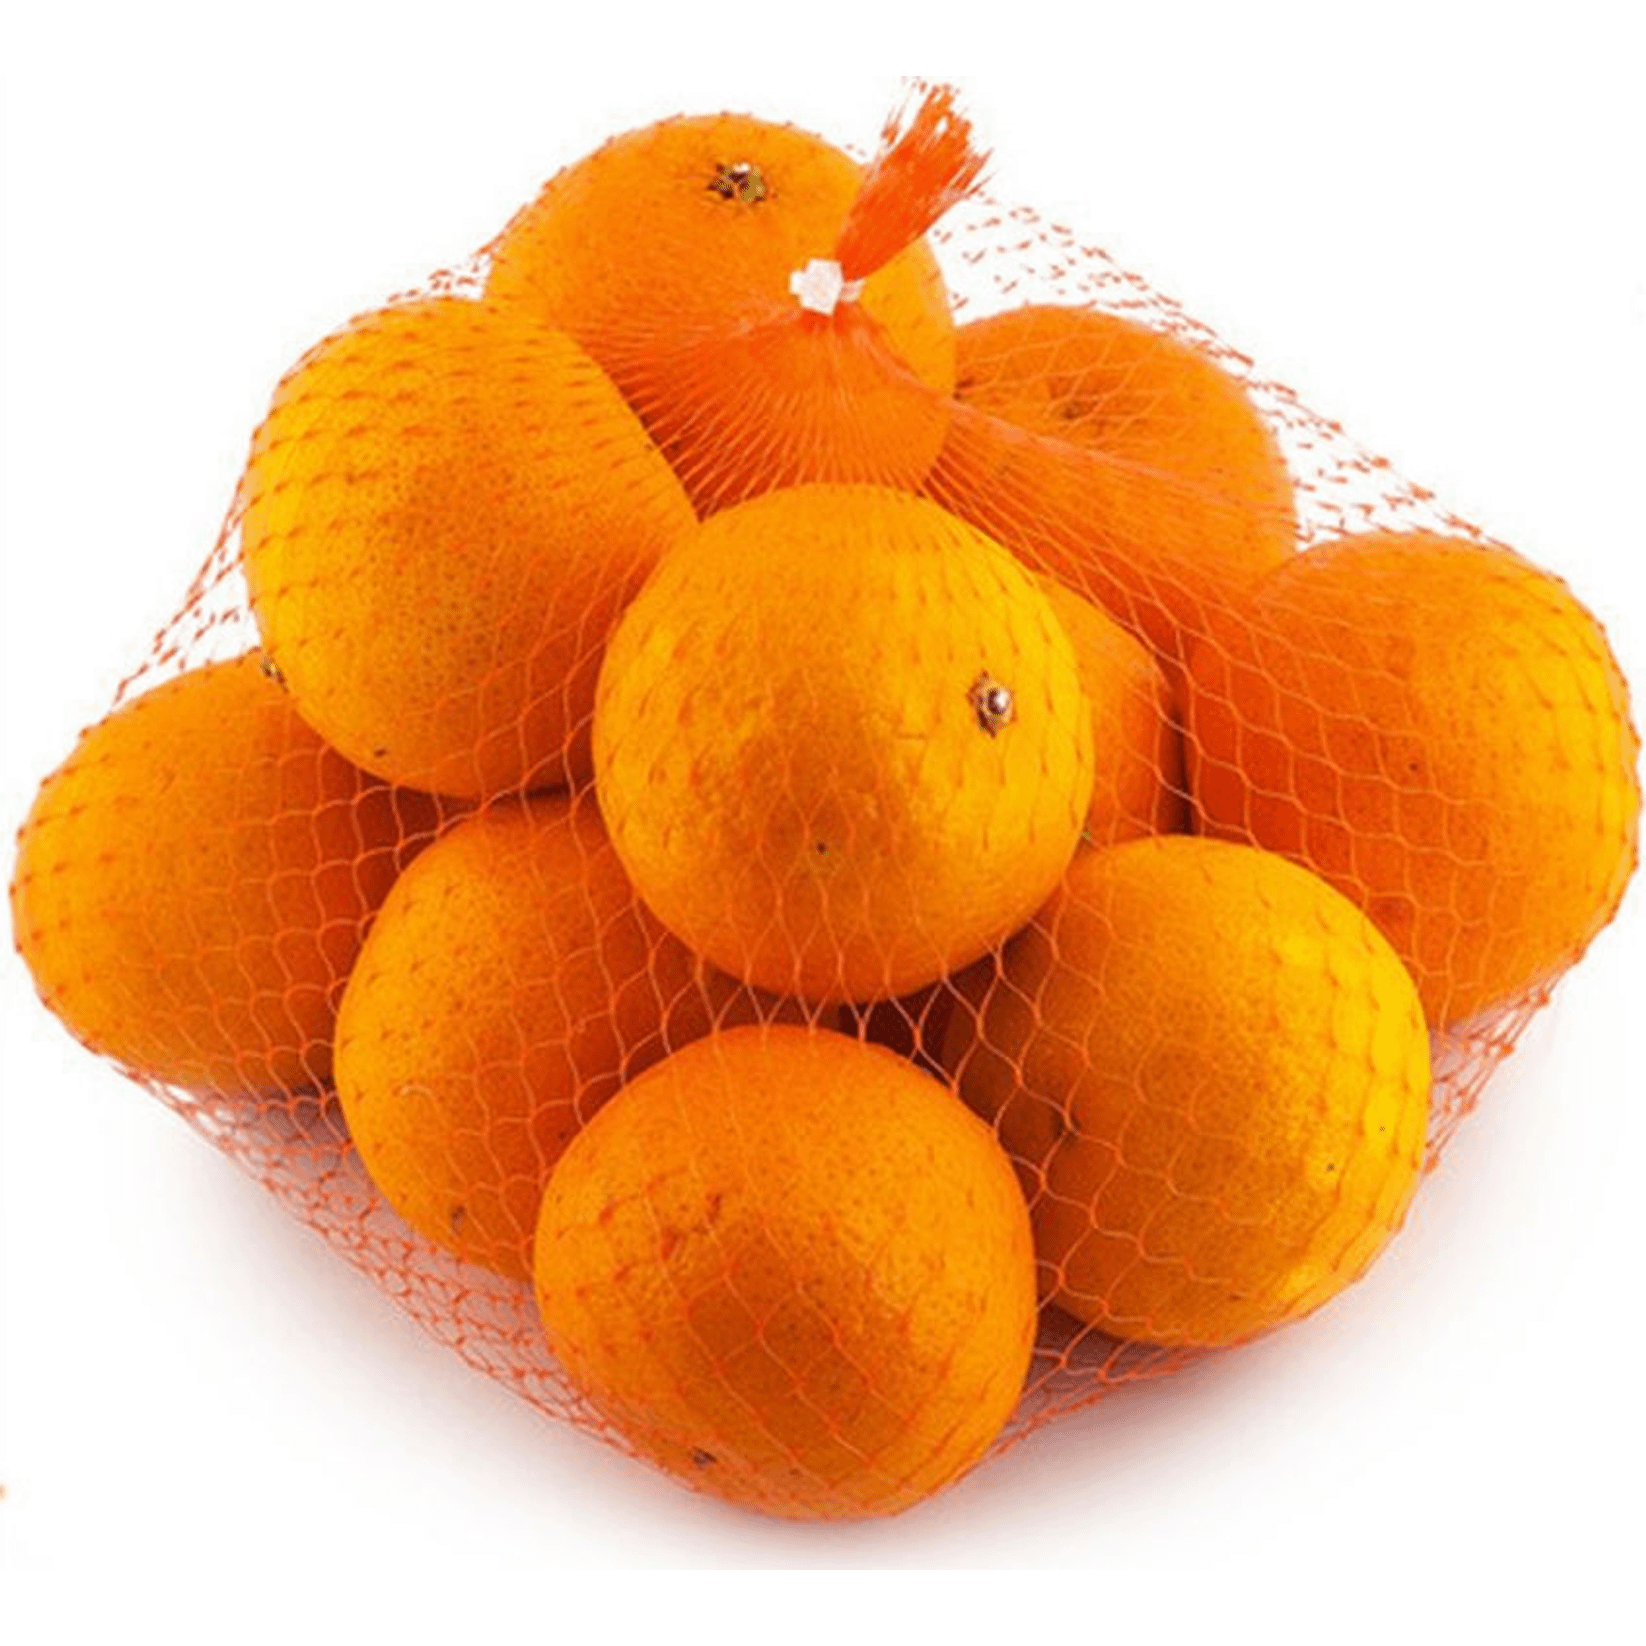 Мандарины Клеменулес. Honey Crunch мандарины, сетка. Апельсины, сетка. Апельсины фасованные. 8 кг мандаринов